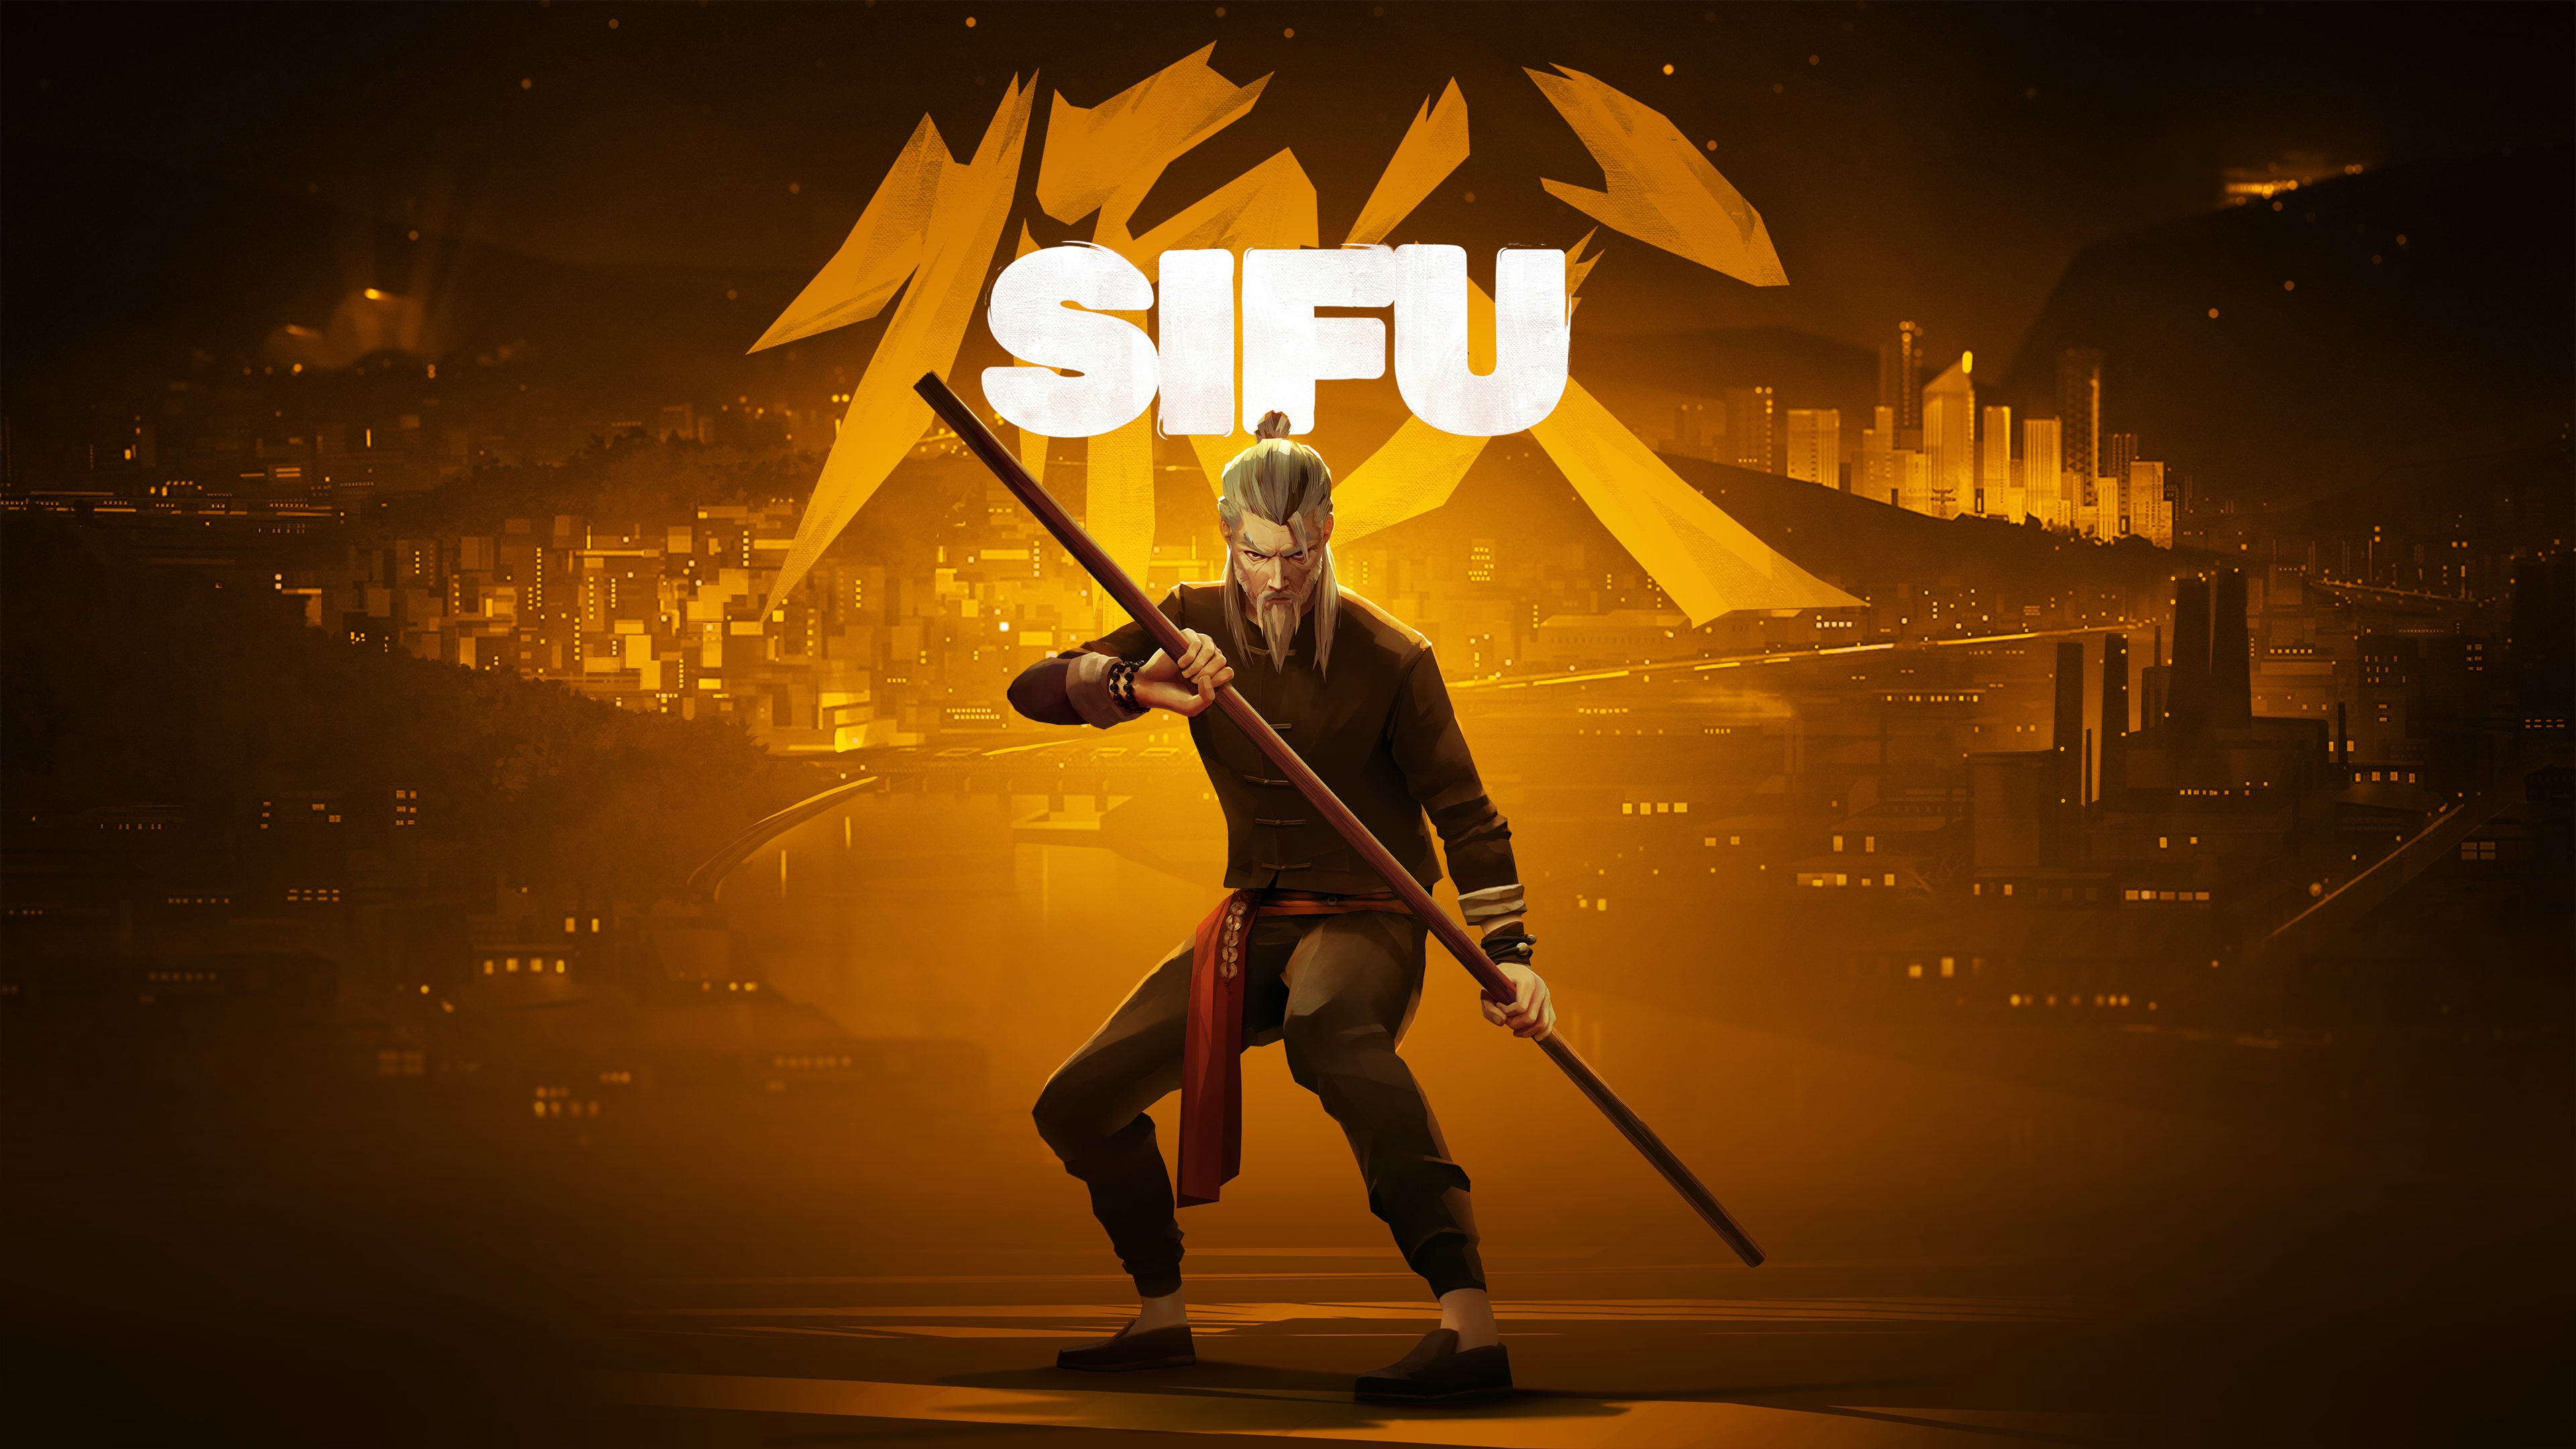 Sifu Deluxe Edition